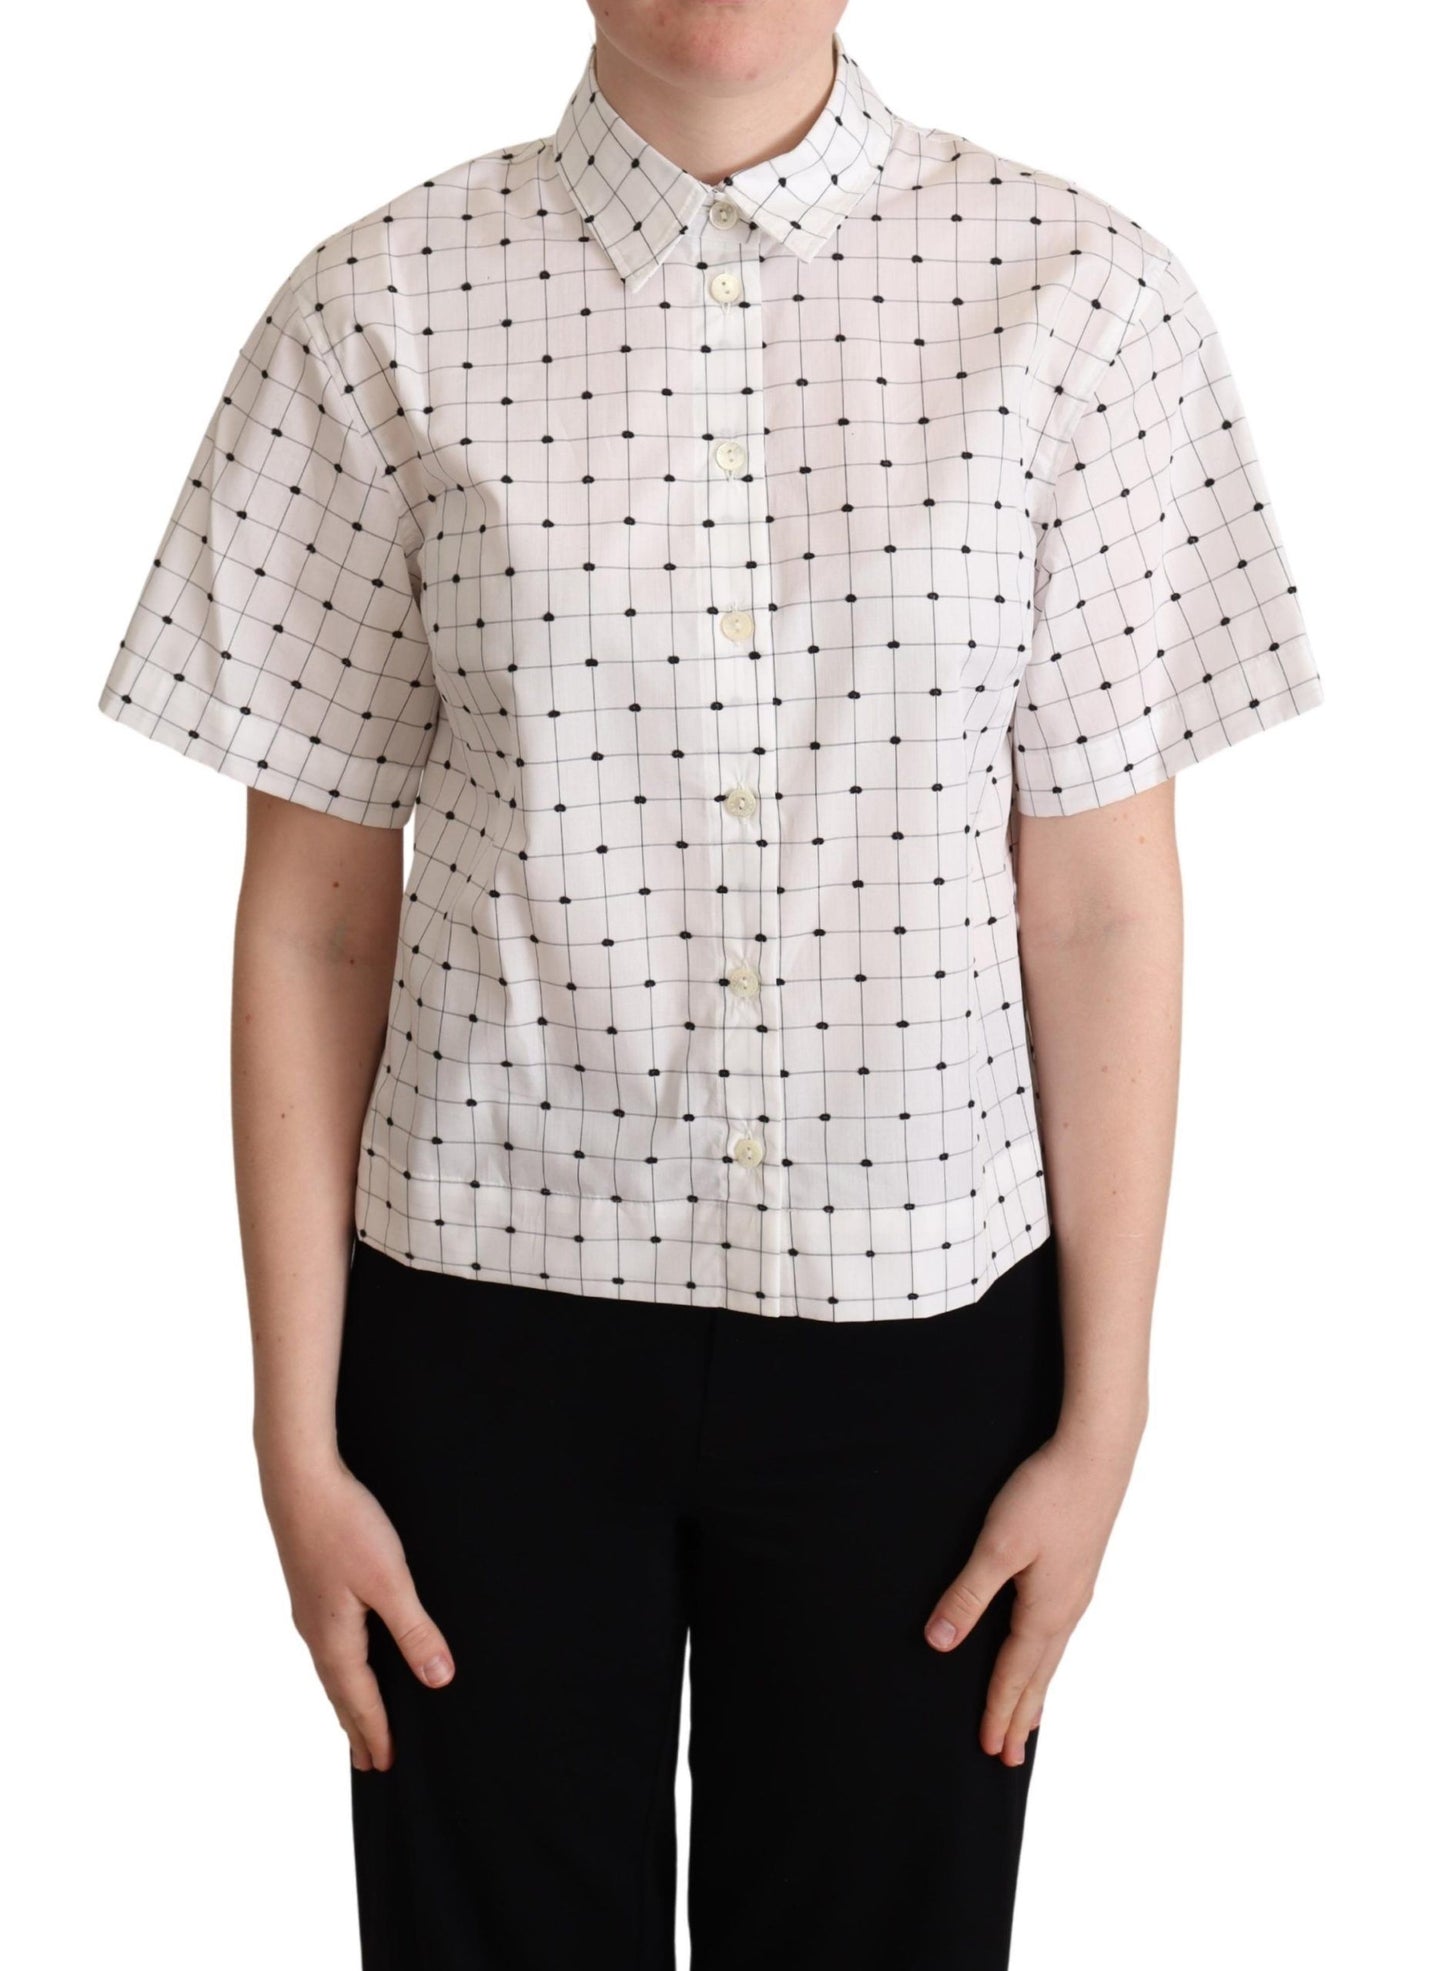 Dolce & Gabbana White Polka Dot Cotton Collared Shirt Top